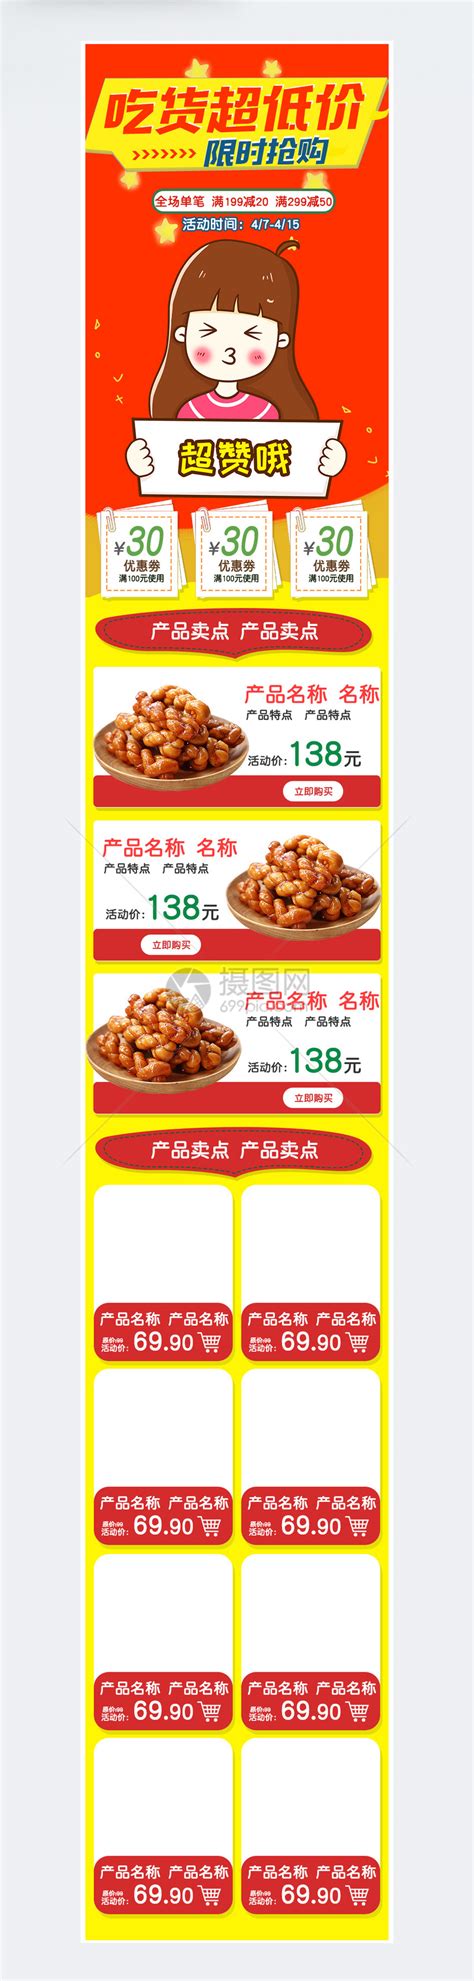 淘宝双12套餐搭配模板图片下载_红动中国